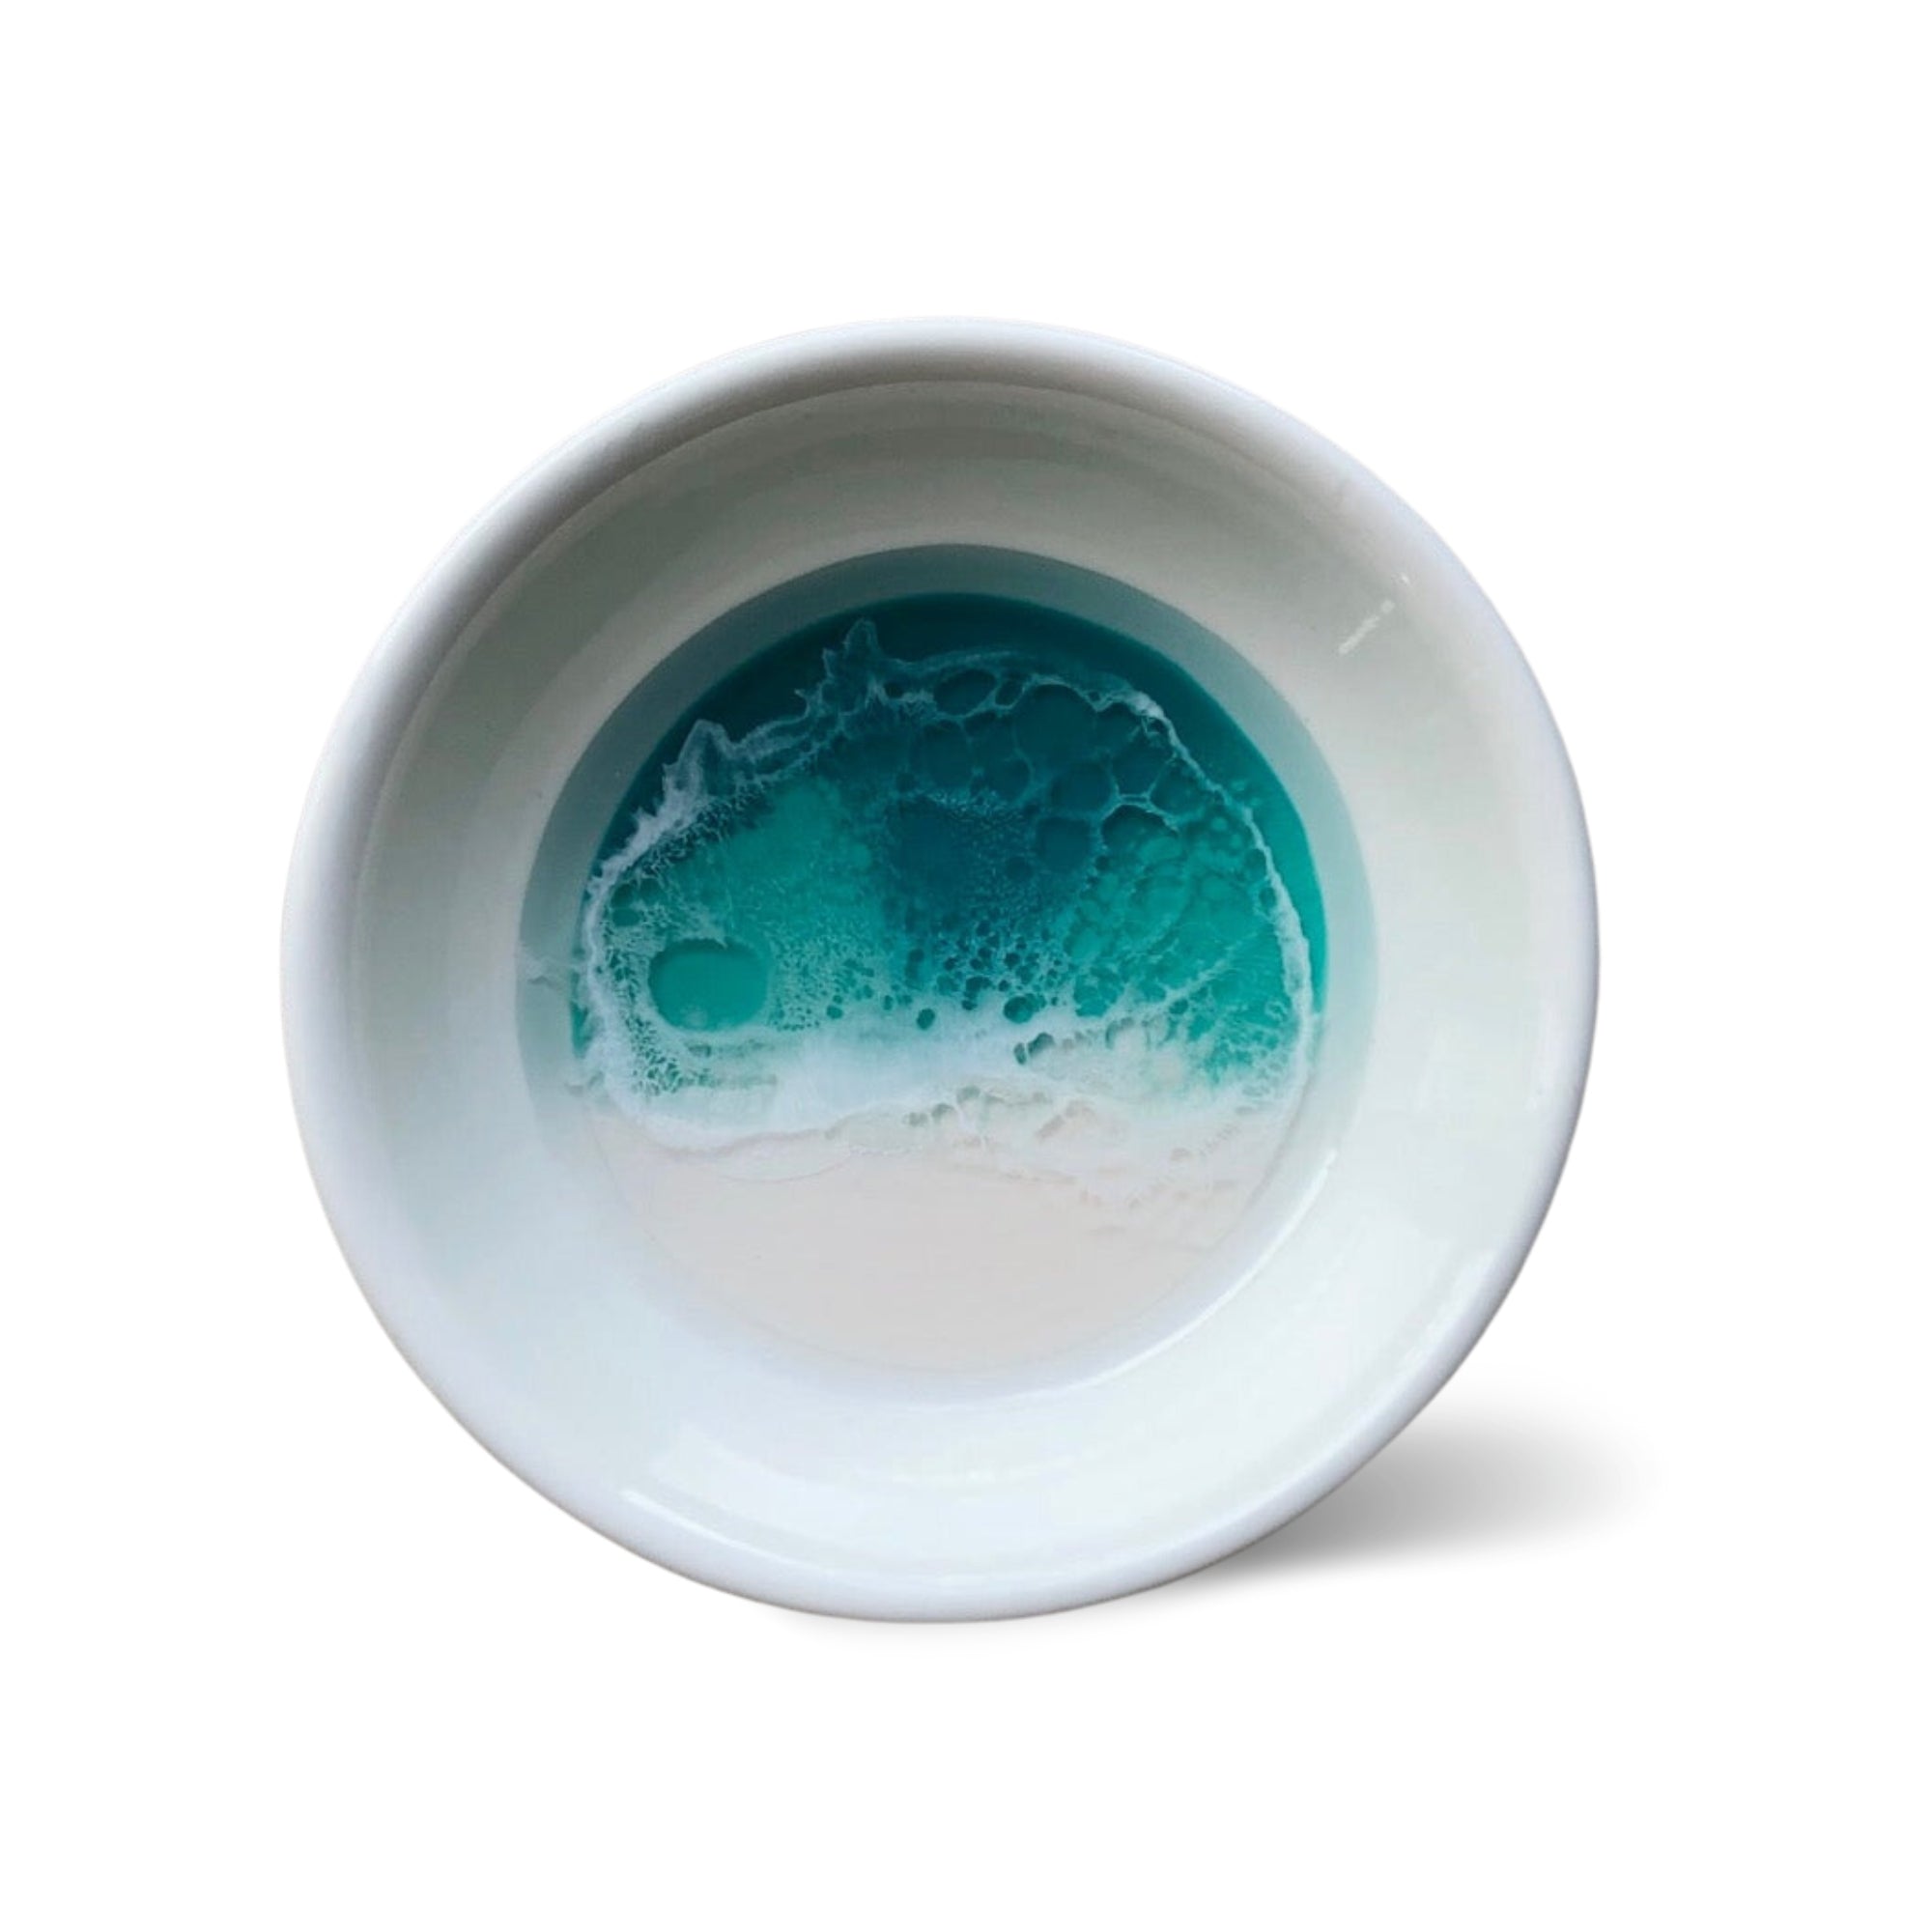 Pop-Up Mākeke - Marr Artworks - 4 Inch Round Ceramic Dish